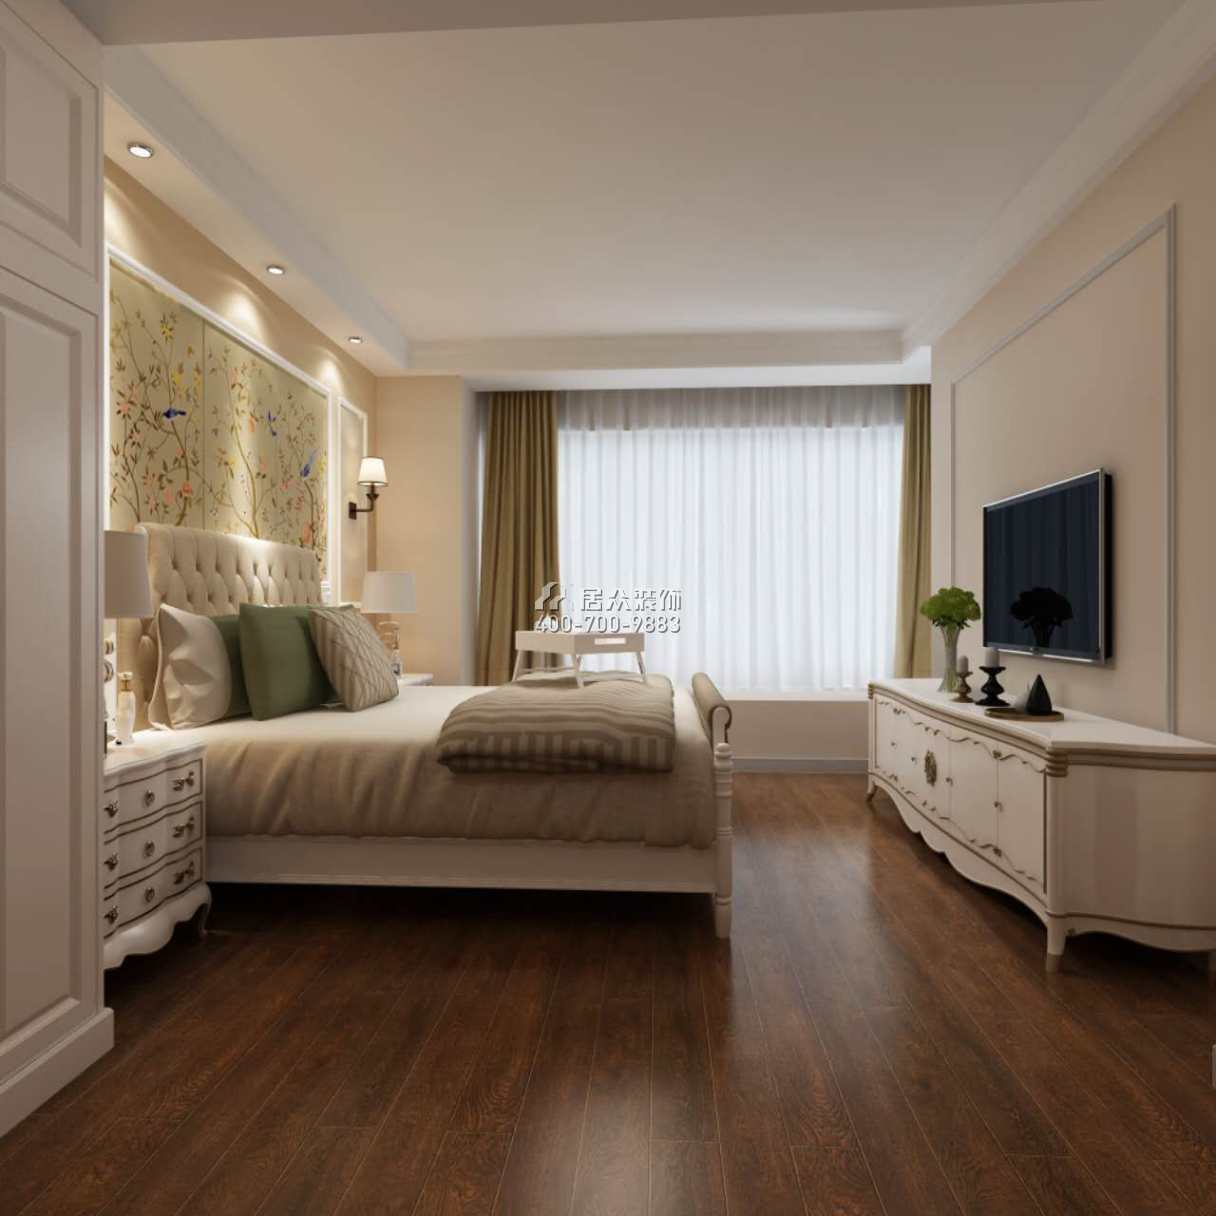 华发山庄191平方米欧式风格平层户型卧室装修效果图